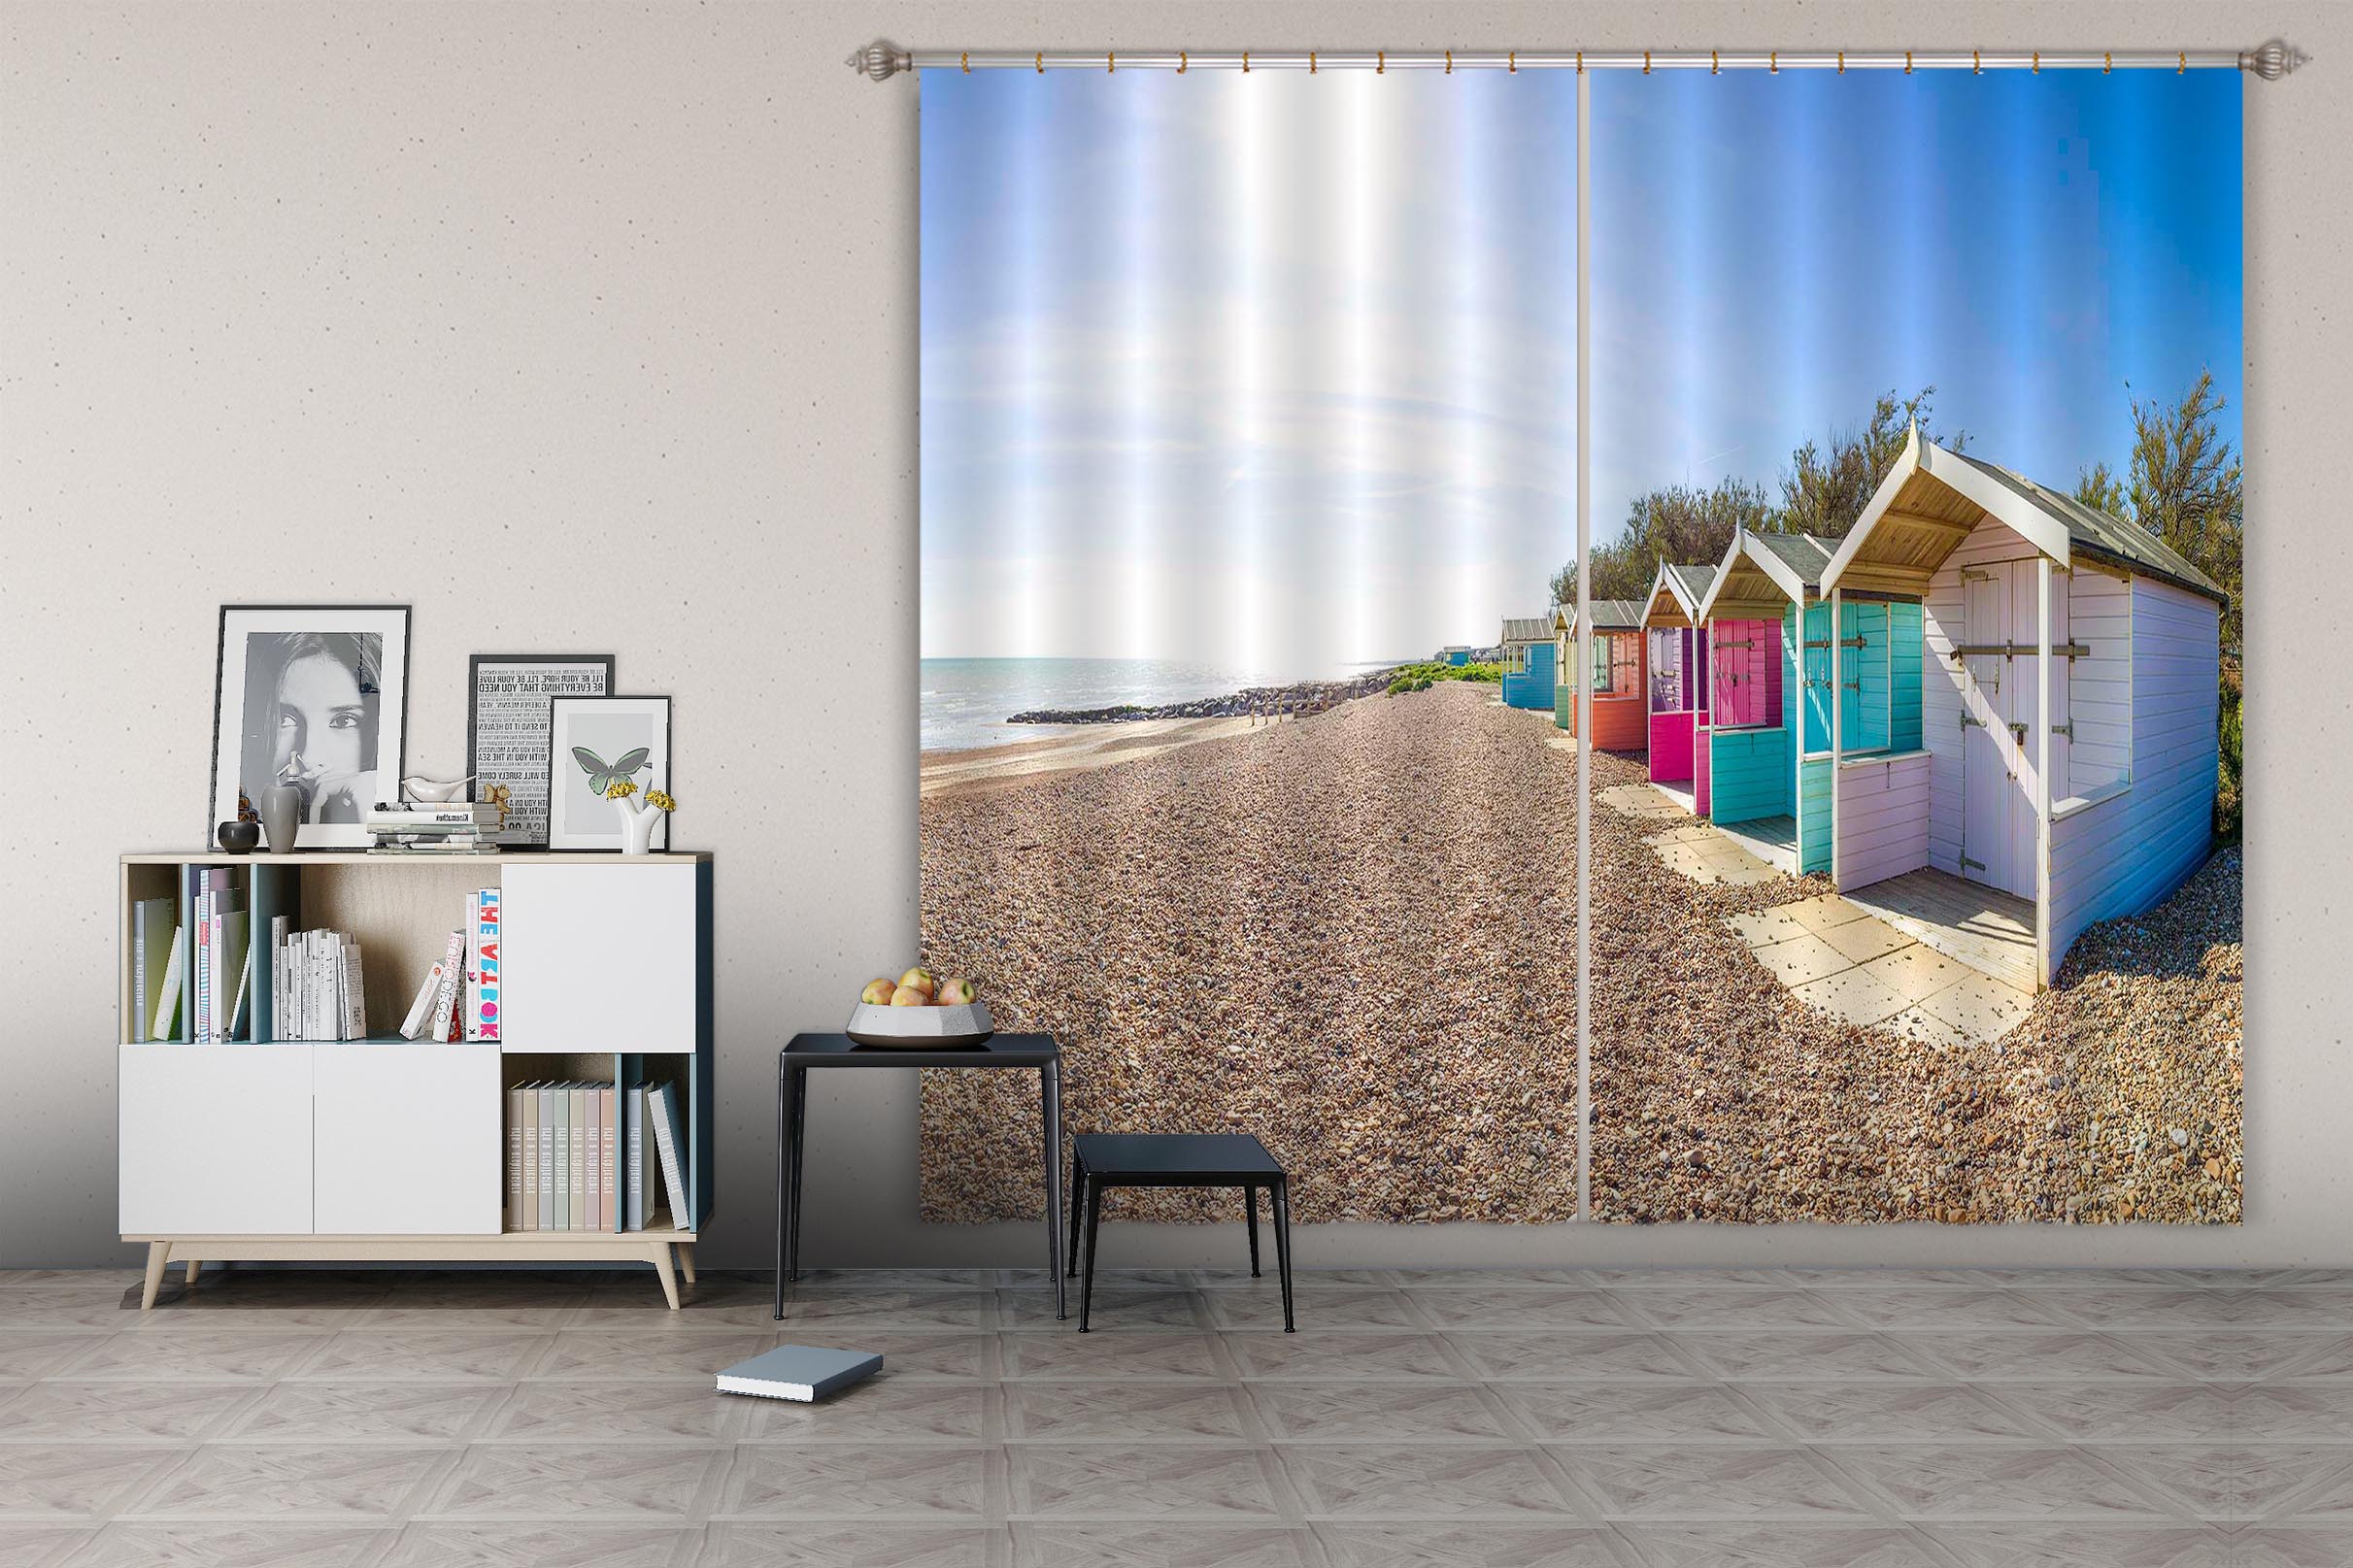 3D Desert Hut 025 Assaf Frank Curtain Curtains Drapes